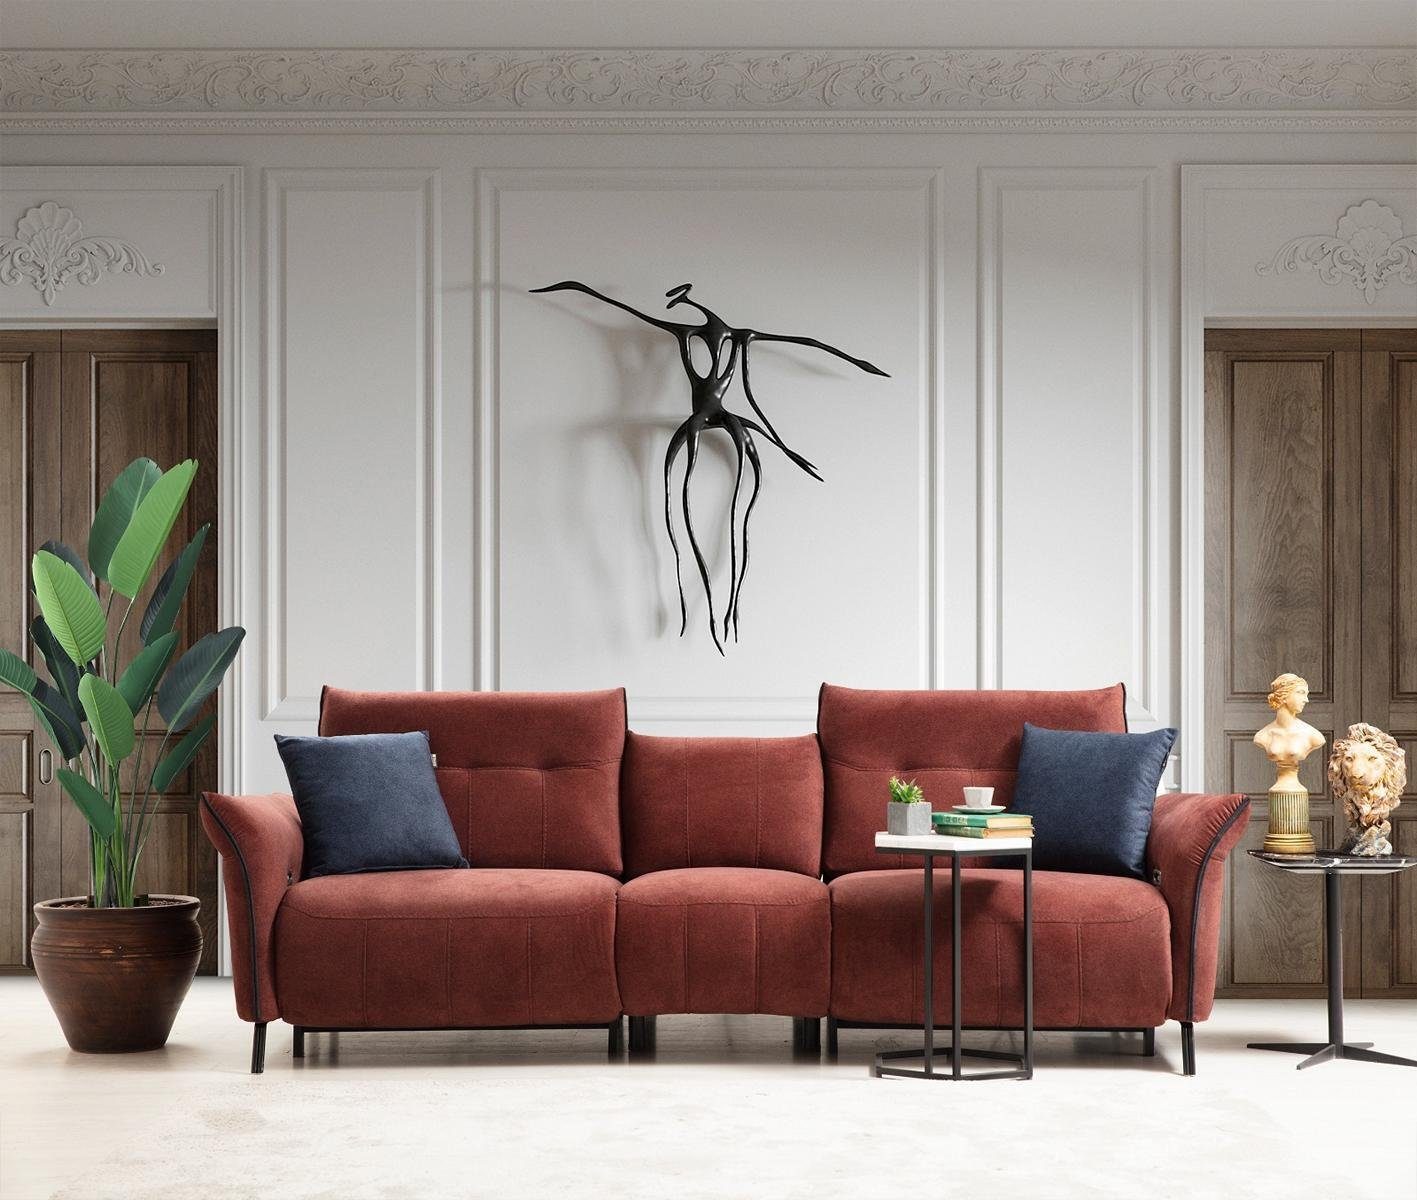 JVmoebel 4-Sitzer Designer Wohnzimmer Neu Polstersofa Viersitzer Couch Möbel, 1 Teile, Made in Europa